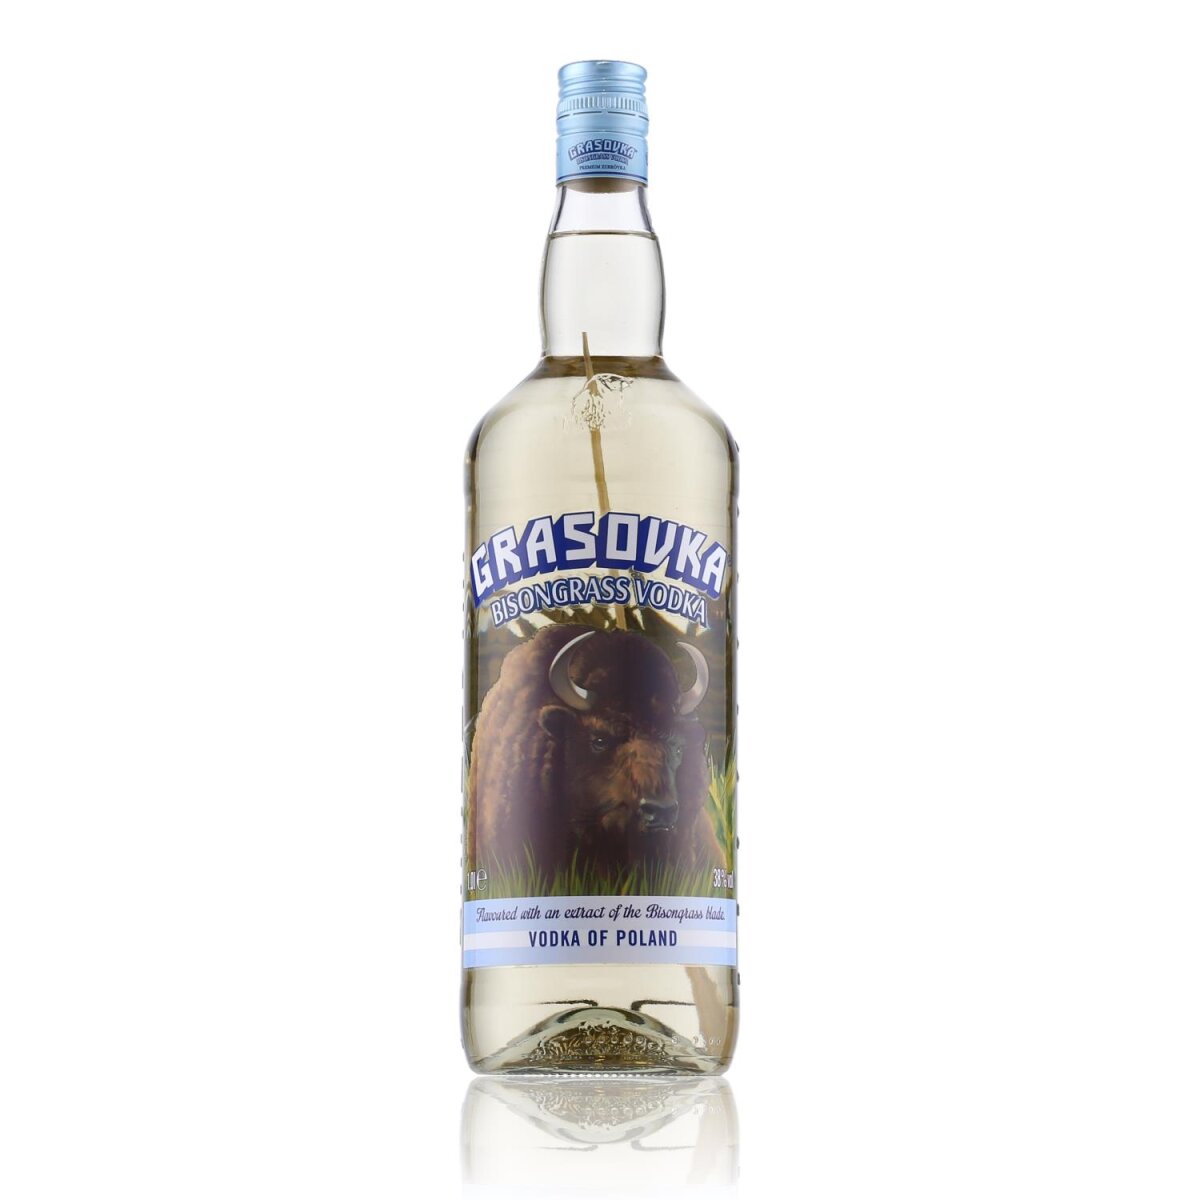 Grasovka Bisongrass Vodka 38% Vol. 16,89 € 1l